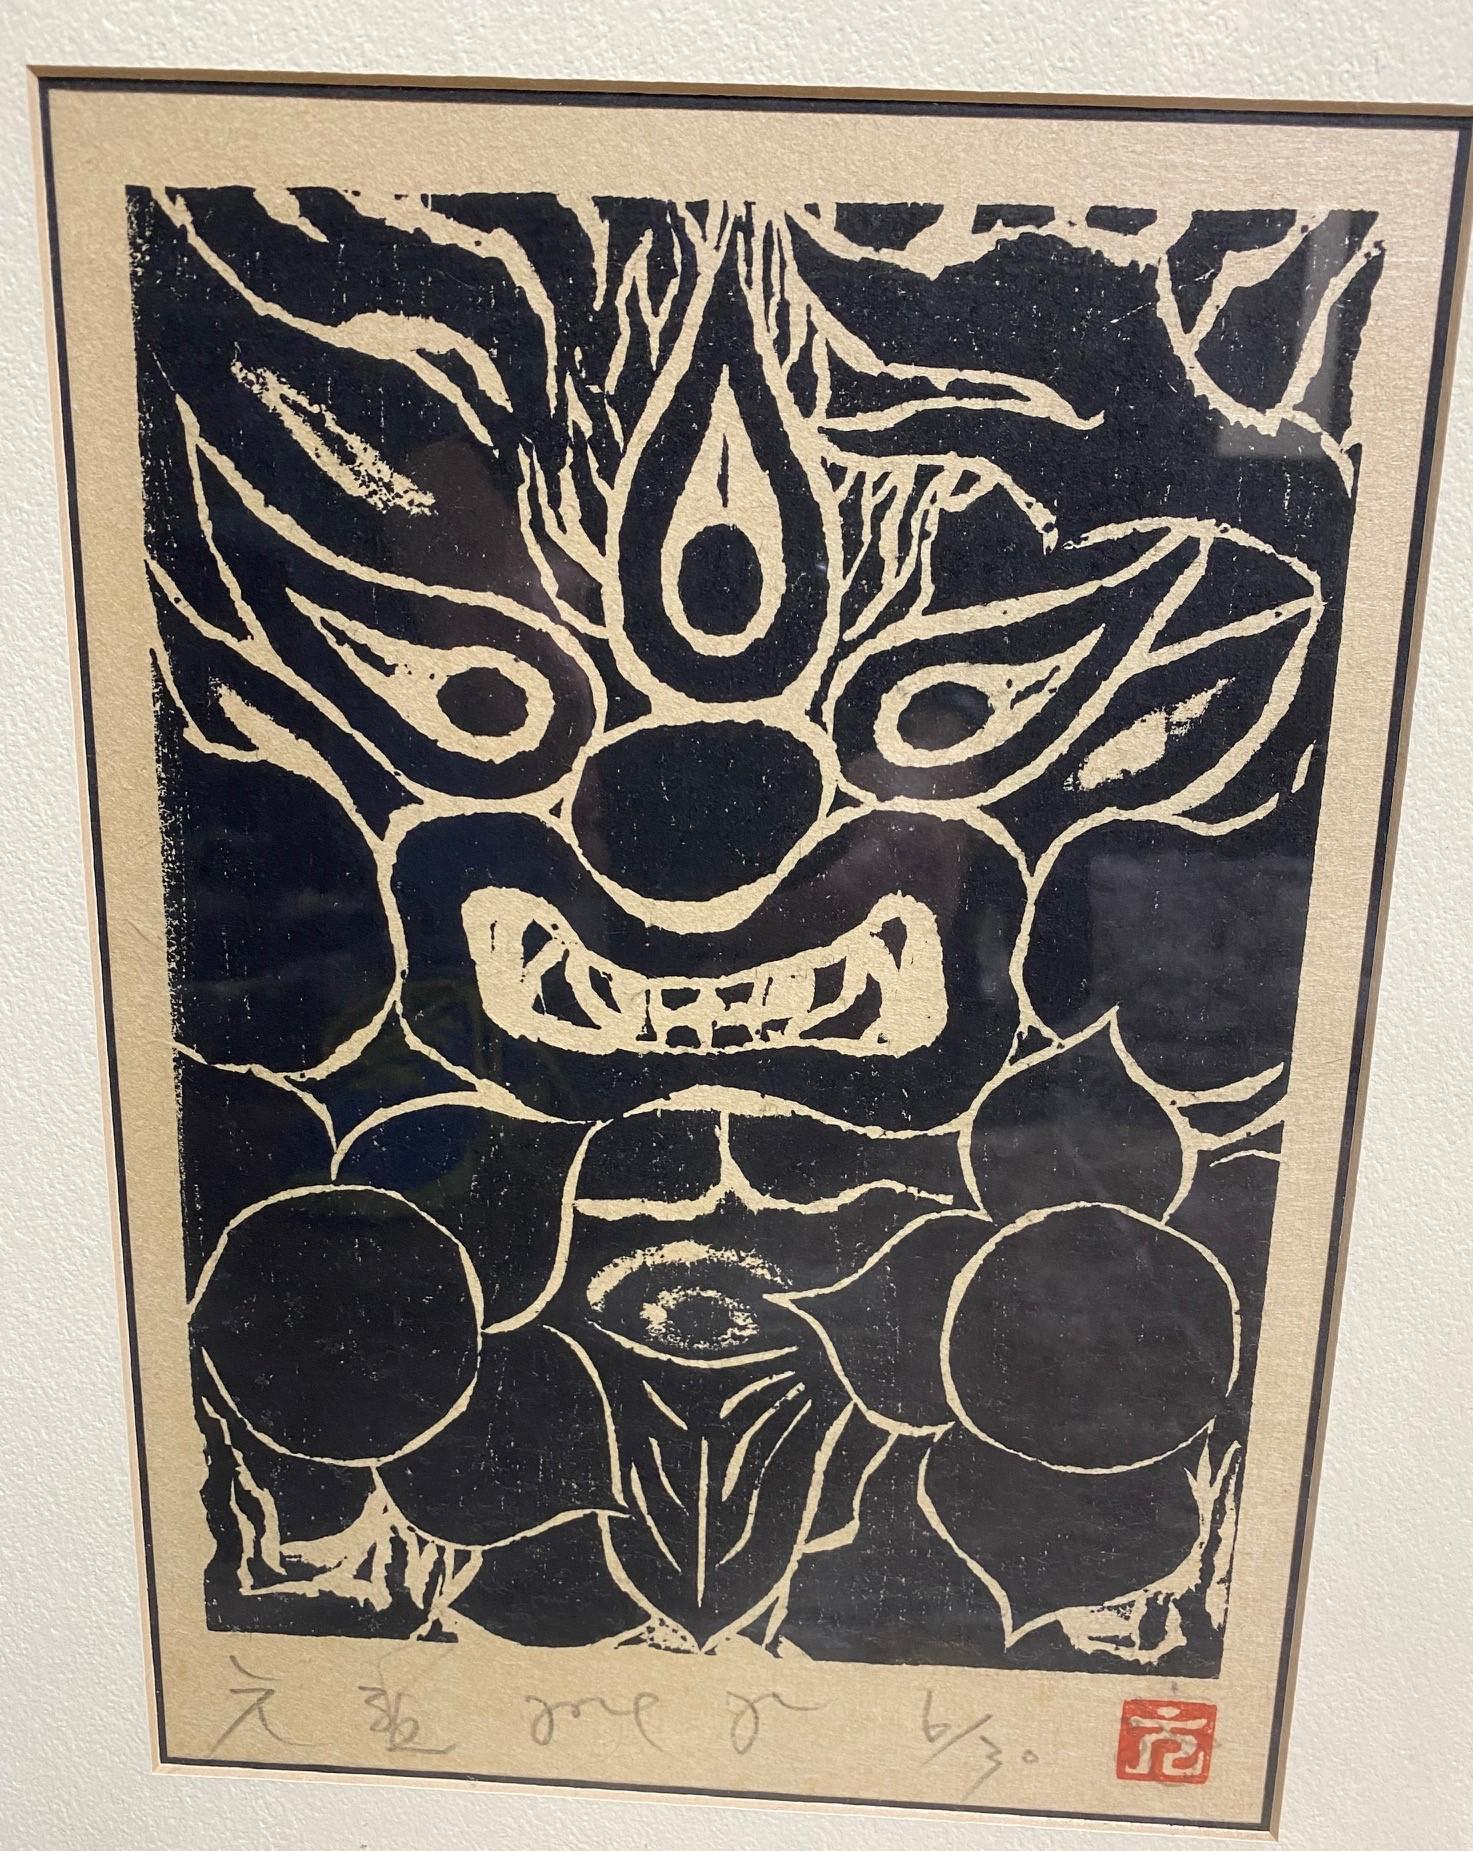 Showa Japanese Signed Limited Edition Black White Woodblock Print Mythological Demon